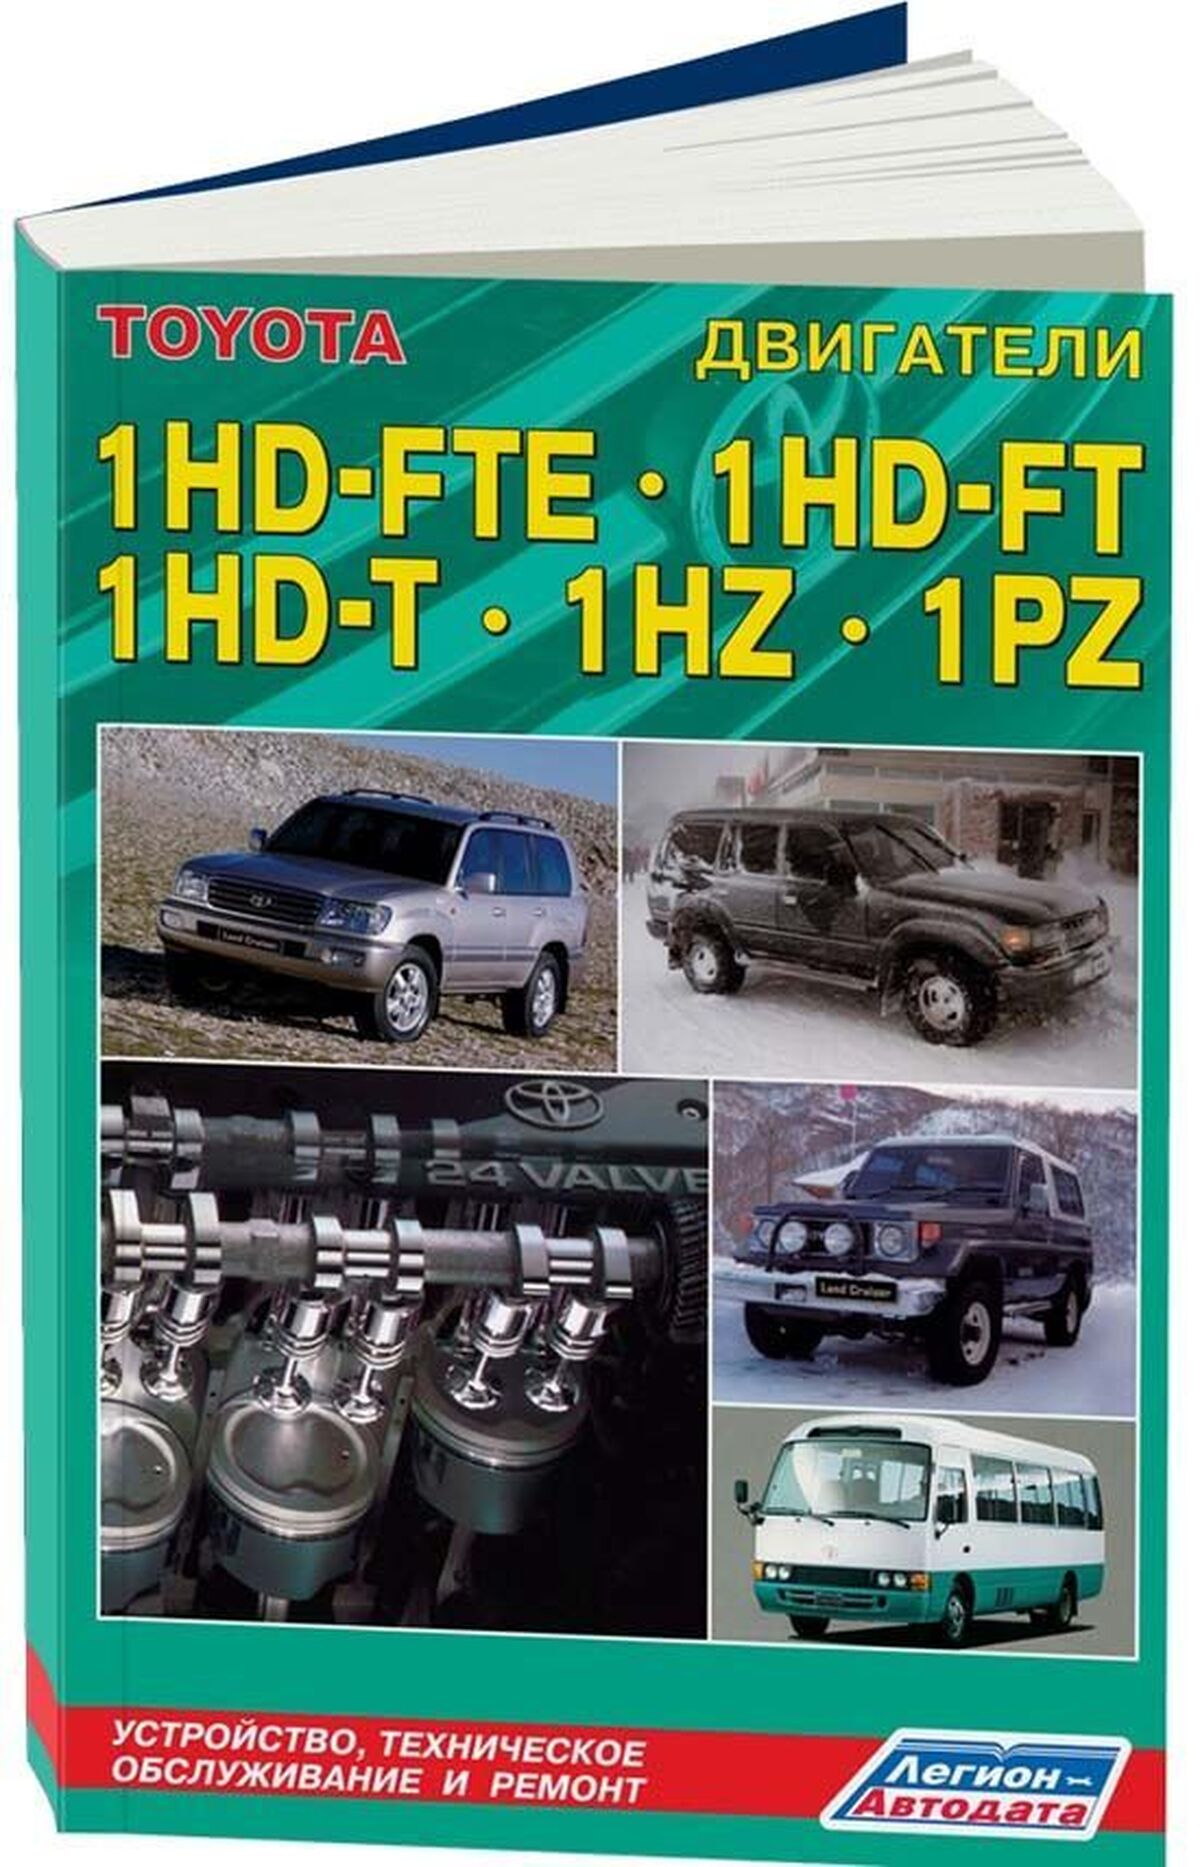 Книга: Двигатели TOYOTA 1HD-FTE / 1HD-FT / 1HD-T / 1HZ / 1PZ (д) | Легион-Aвтодата